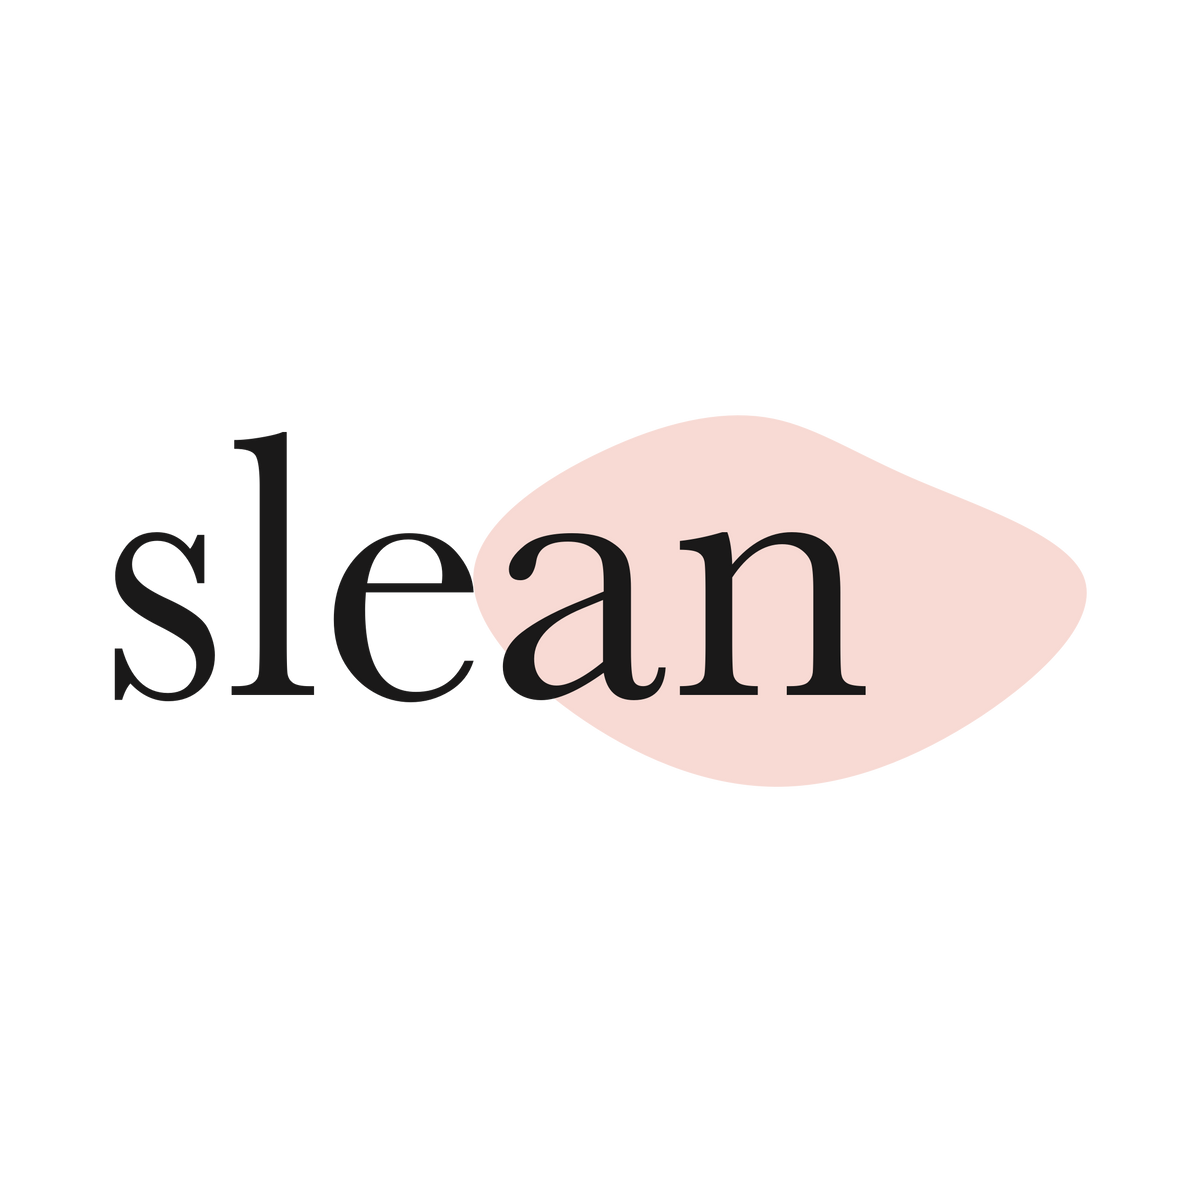 slean